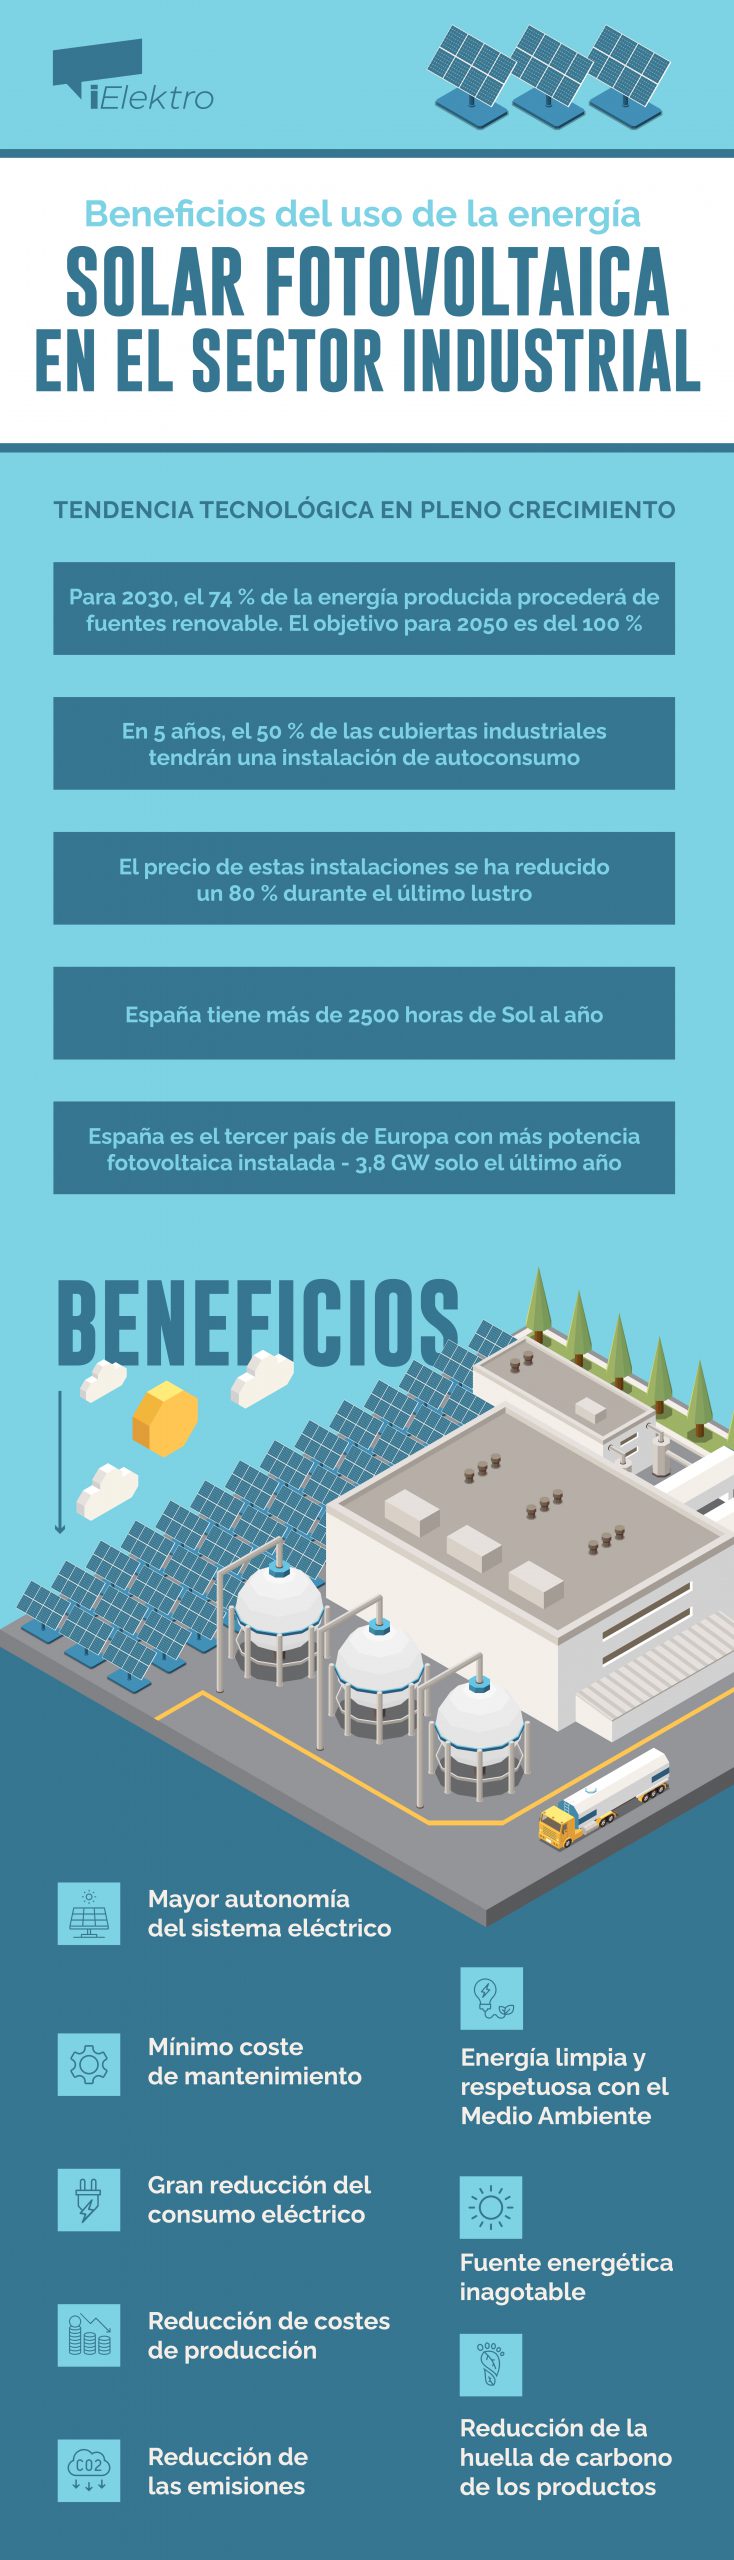 [INFOGRAFÍA] Los beneficios de la energía solar fotovoltaica para el sector industrial